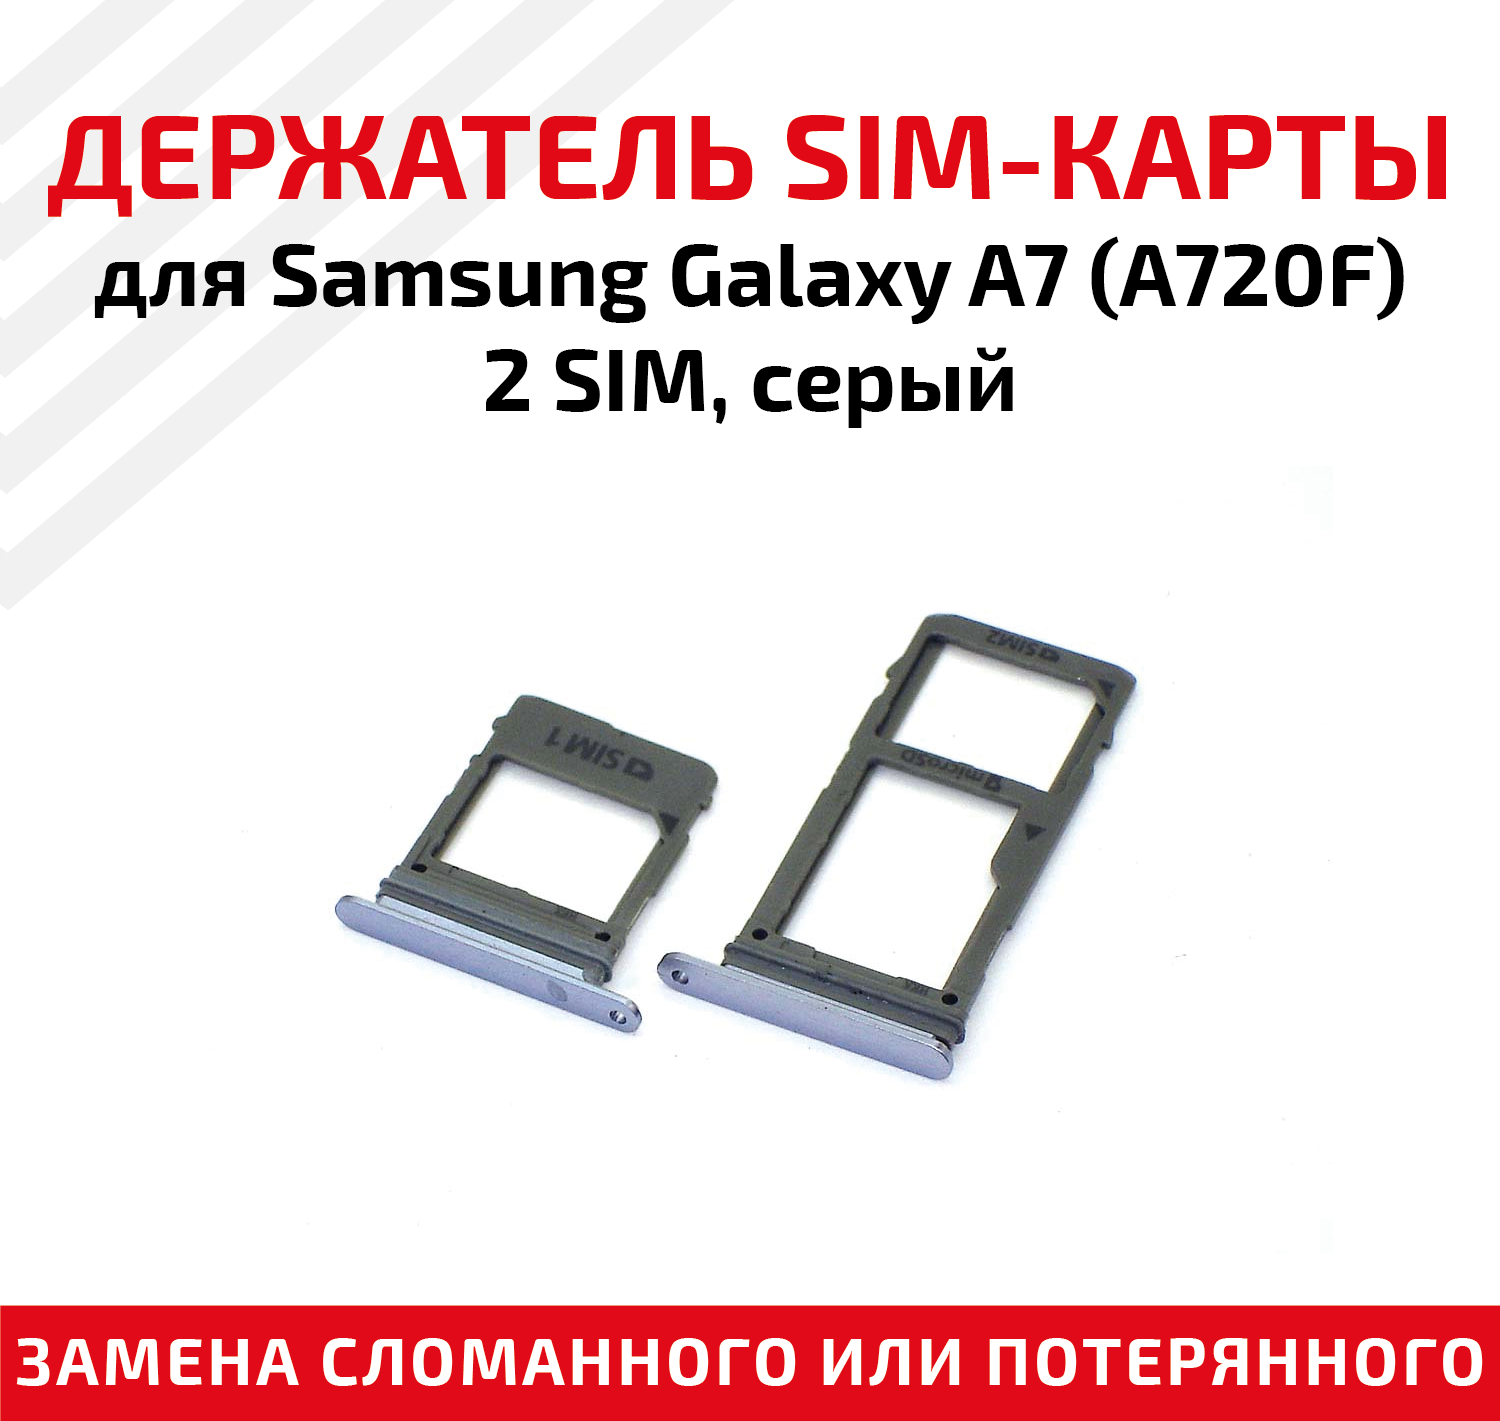 Лоток (держатель, контейнер, слот) SIM-карты для мобильного телефона (смартфона) Samsung Galaxy A7 (A720F) - 2 SIM, серый